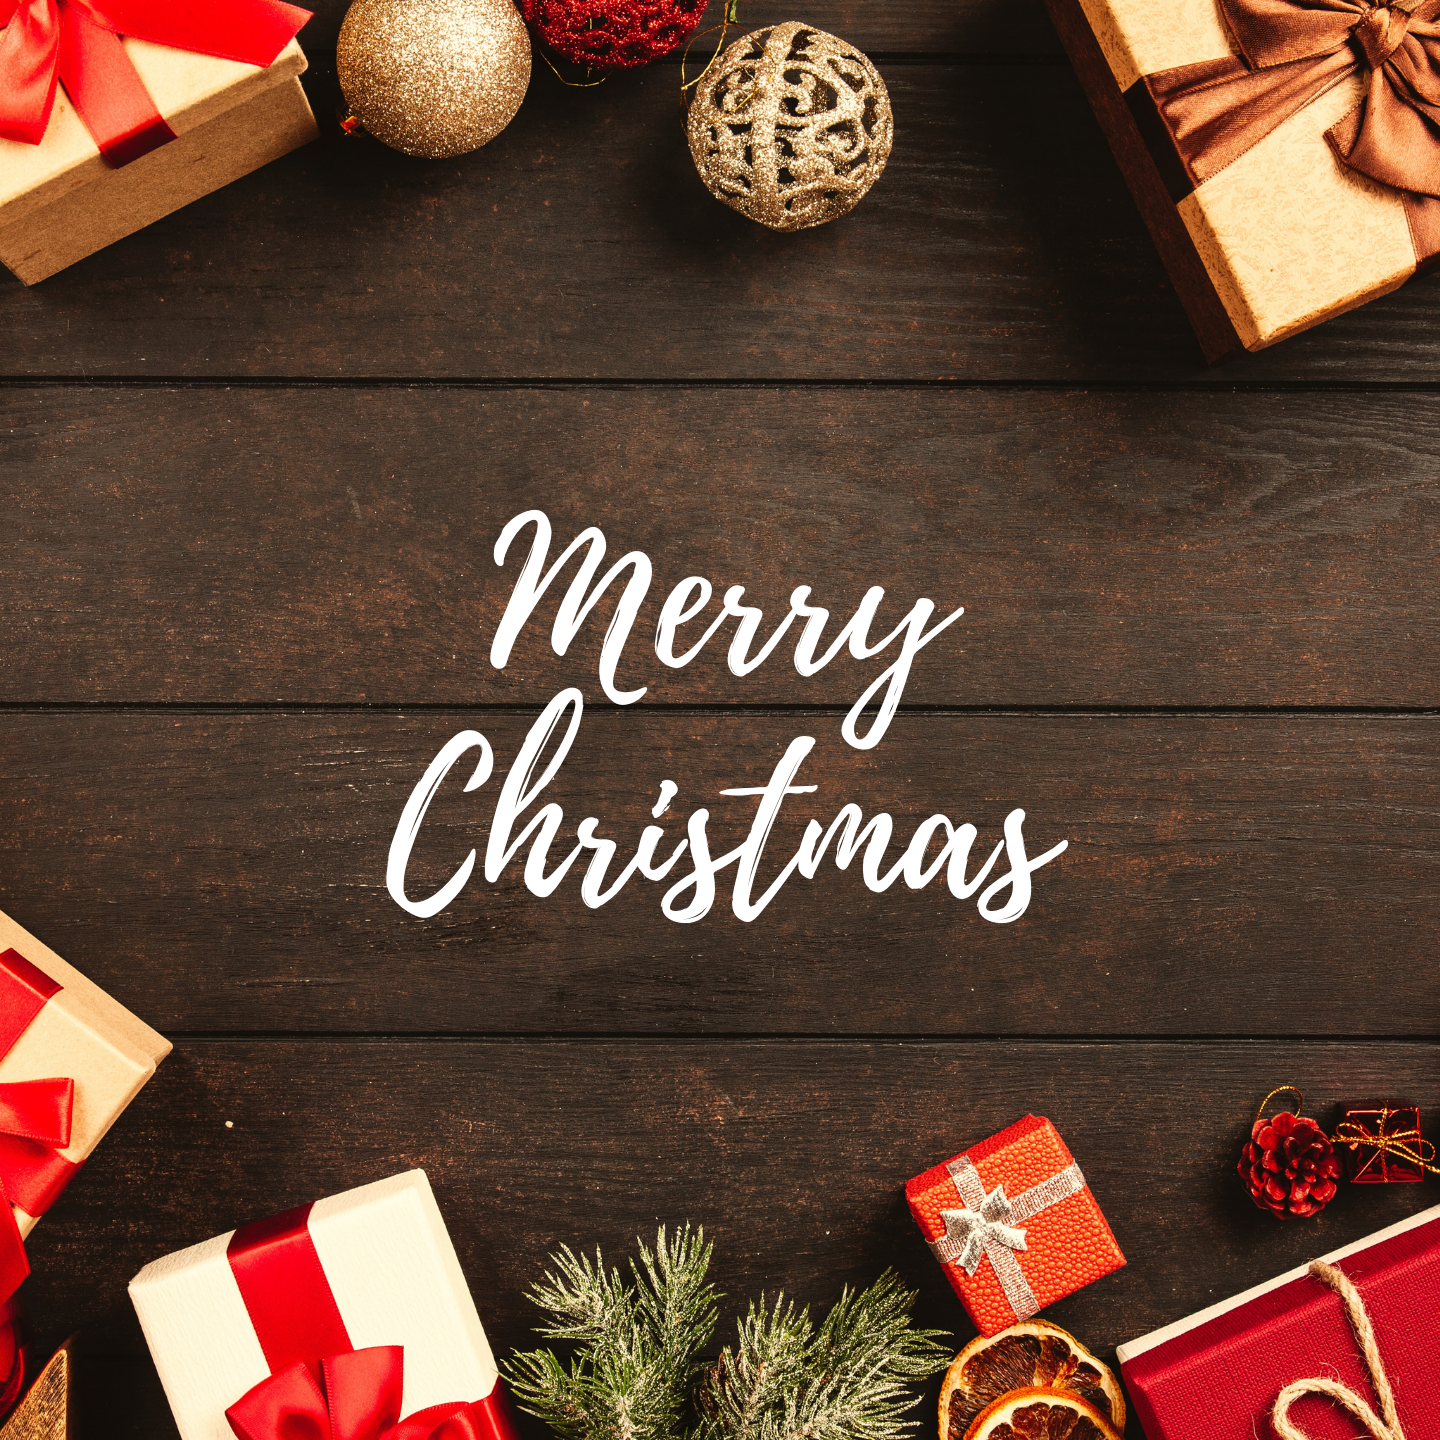 Cofanetti regalo per augurare Buon Natale a tutti i tuoi cari:
mamma e papà, amici e parenti,
vicini e lontani, con i nostri cofanetti è sempre un Natale speciale!